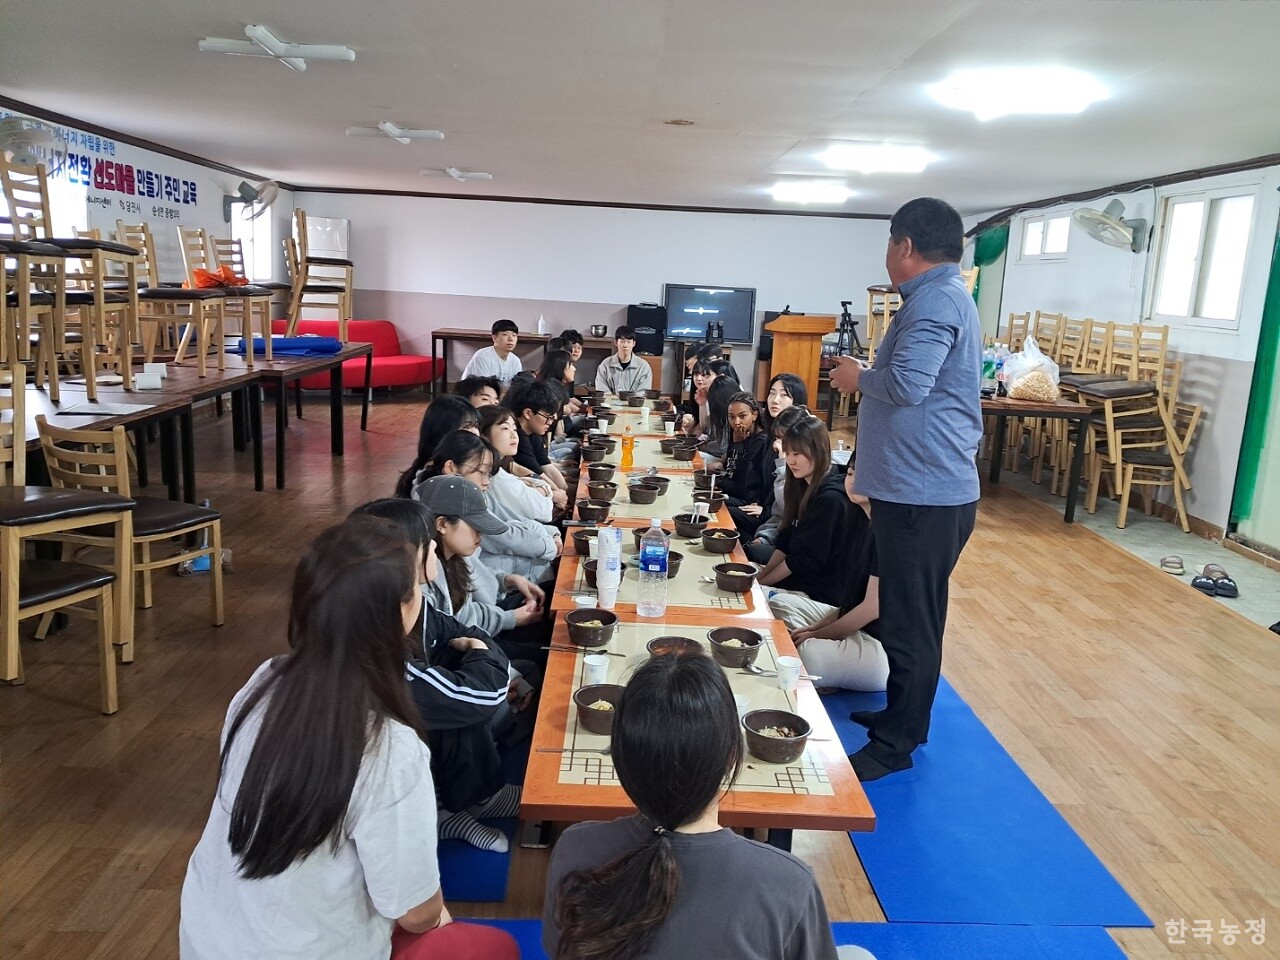 이종섭 당진시농민회장(서 있는 이)이 중앙대학교 사회과학대 농활대 학생들과 식사 전 담소를 나누고 있다.